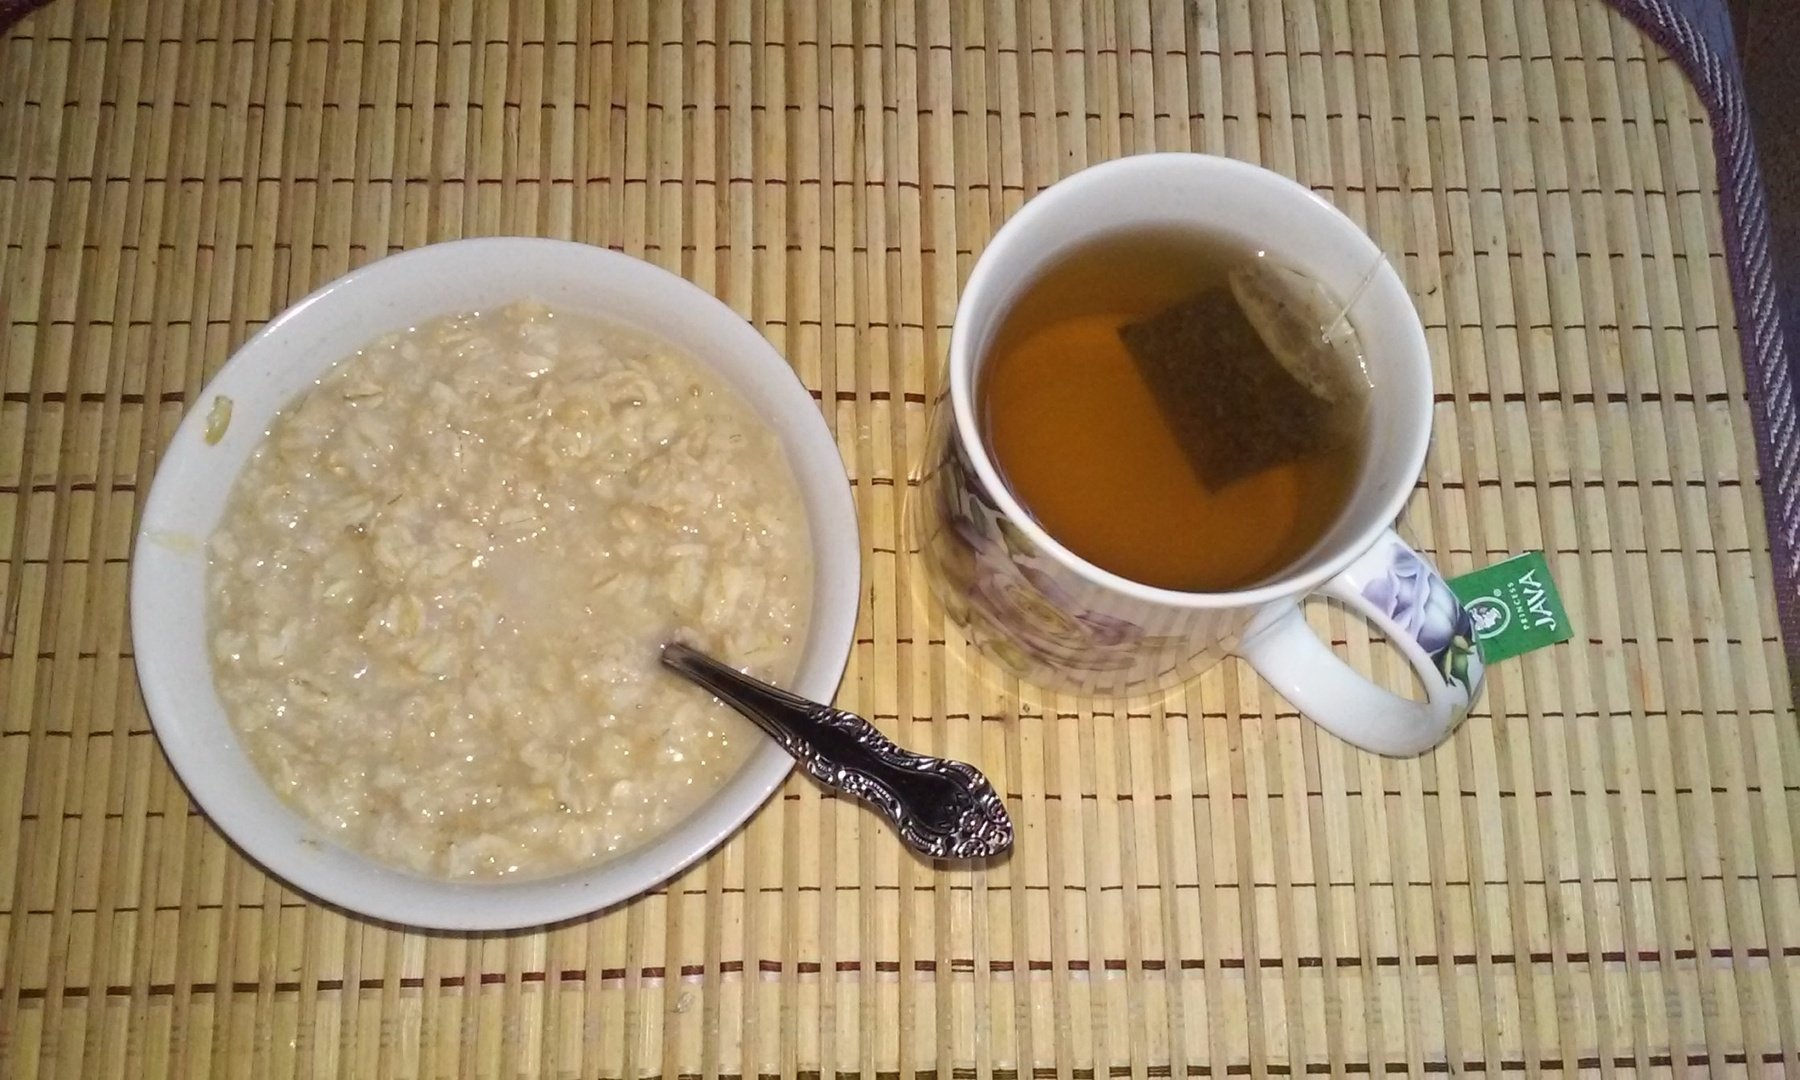 Завтрак каша и чай. Каша и чай. Рисовая каша и чай. Рисовая каша с чаем. Чай с молоком.